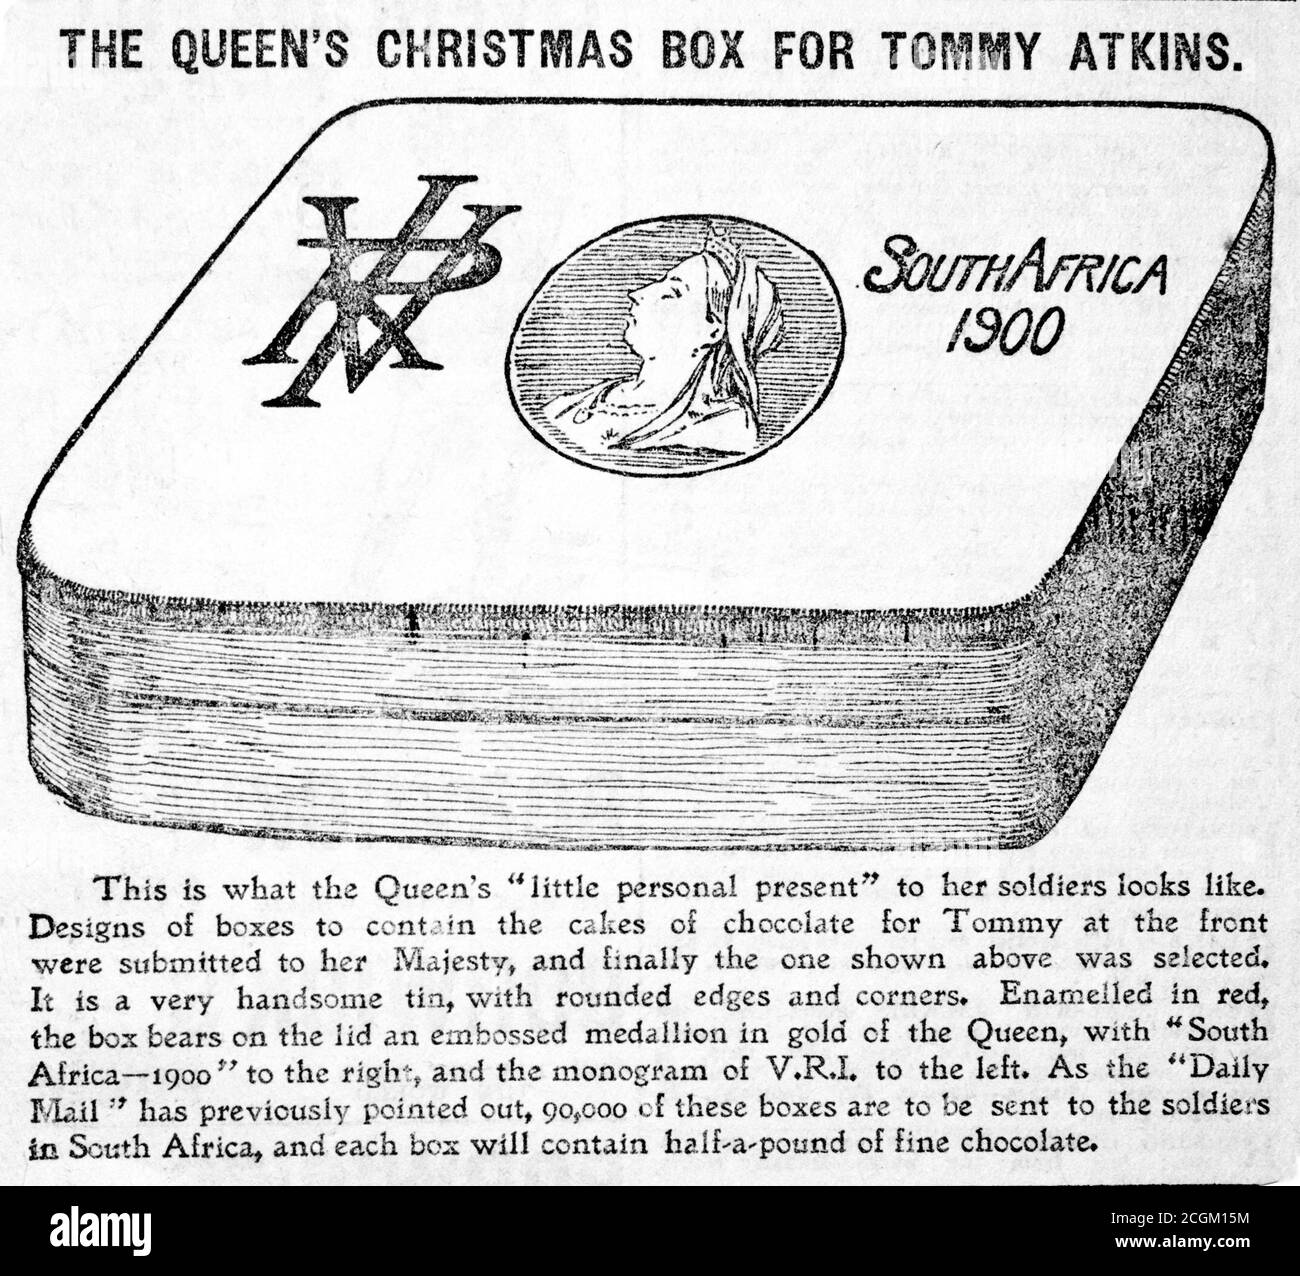 Un giornale storico contemporaneo che taglia 'la scatola di Natale della regina per gli Atkins Tommy' dalla posta quotidiana circa 1899 con una descrizione. L'illustrazione mostra la scatola di Natale allora proposta da inviare fuori ai soliders che servono nella seconda guerra del Boer. Foto Stock